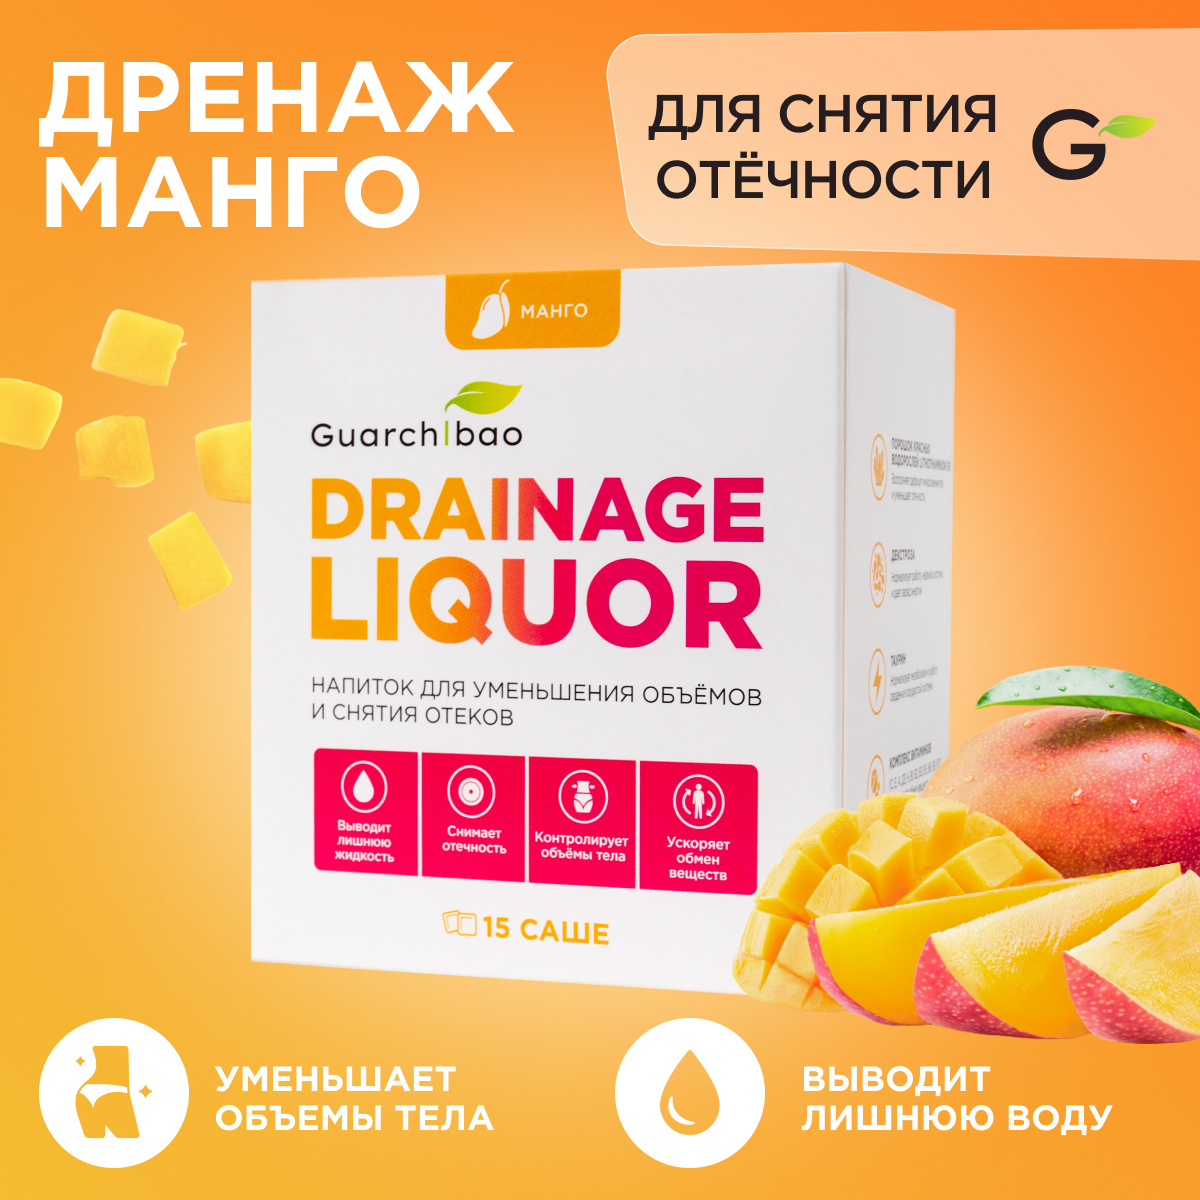 Дренажный напиток Guarchibao Drainage Liquor со вкусом Манго для снятия отеков и уменьшения объемов. #1